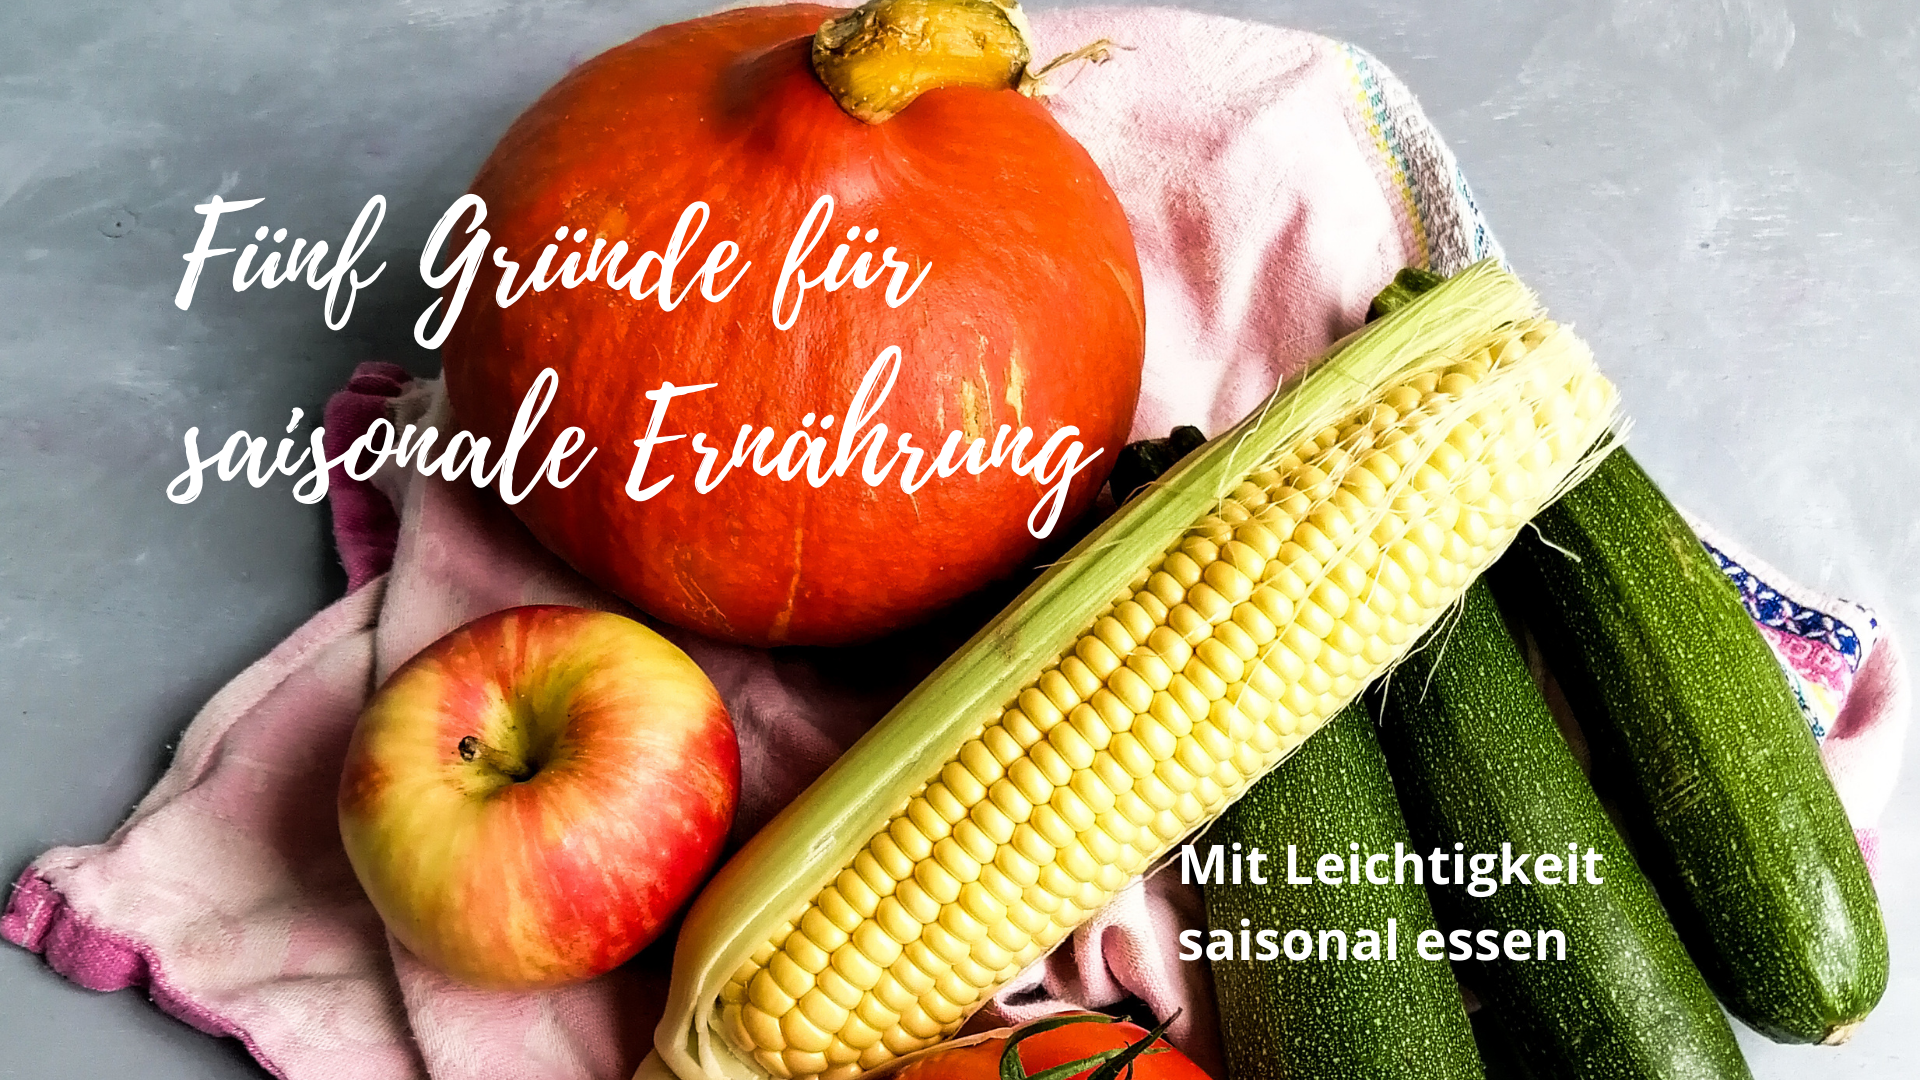 You are currently viewing Fünf Gründe für saisonale Ernährung